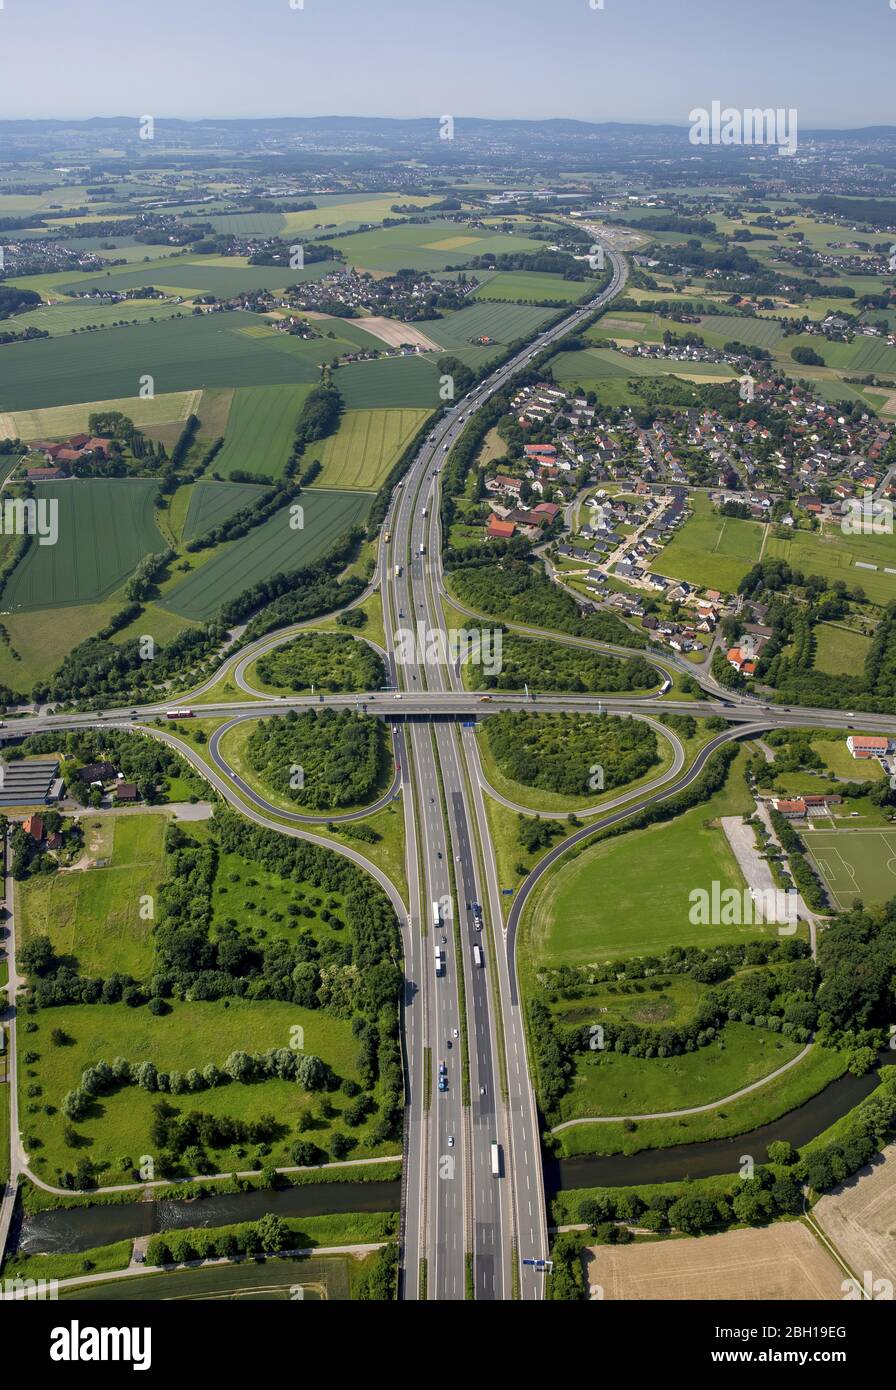 , sortie Herford/Bad Salzuflen de l'autoroute A 2 vers la B239, quartier Ahmsen, 07.06.2016, vue aérienne, Allemagne, Rhénanie-du-Nord-Westphalie, Bad Salzuflen Banque D'Images